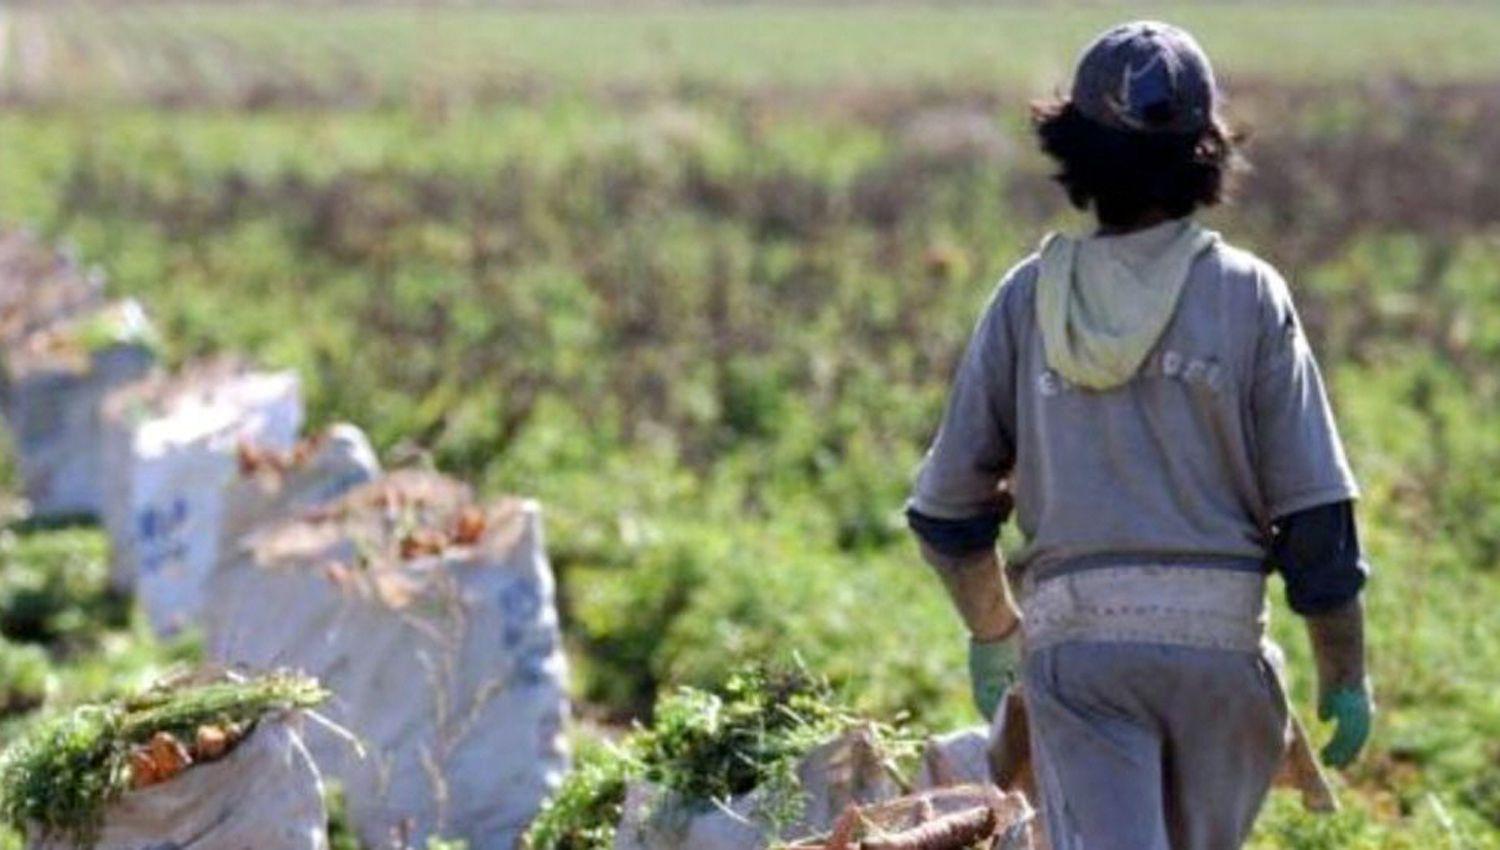 El trabajo infantil configura una clara violación a las normas laborales y tratados internacionales